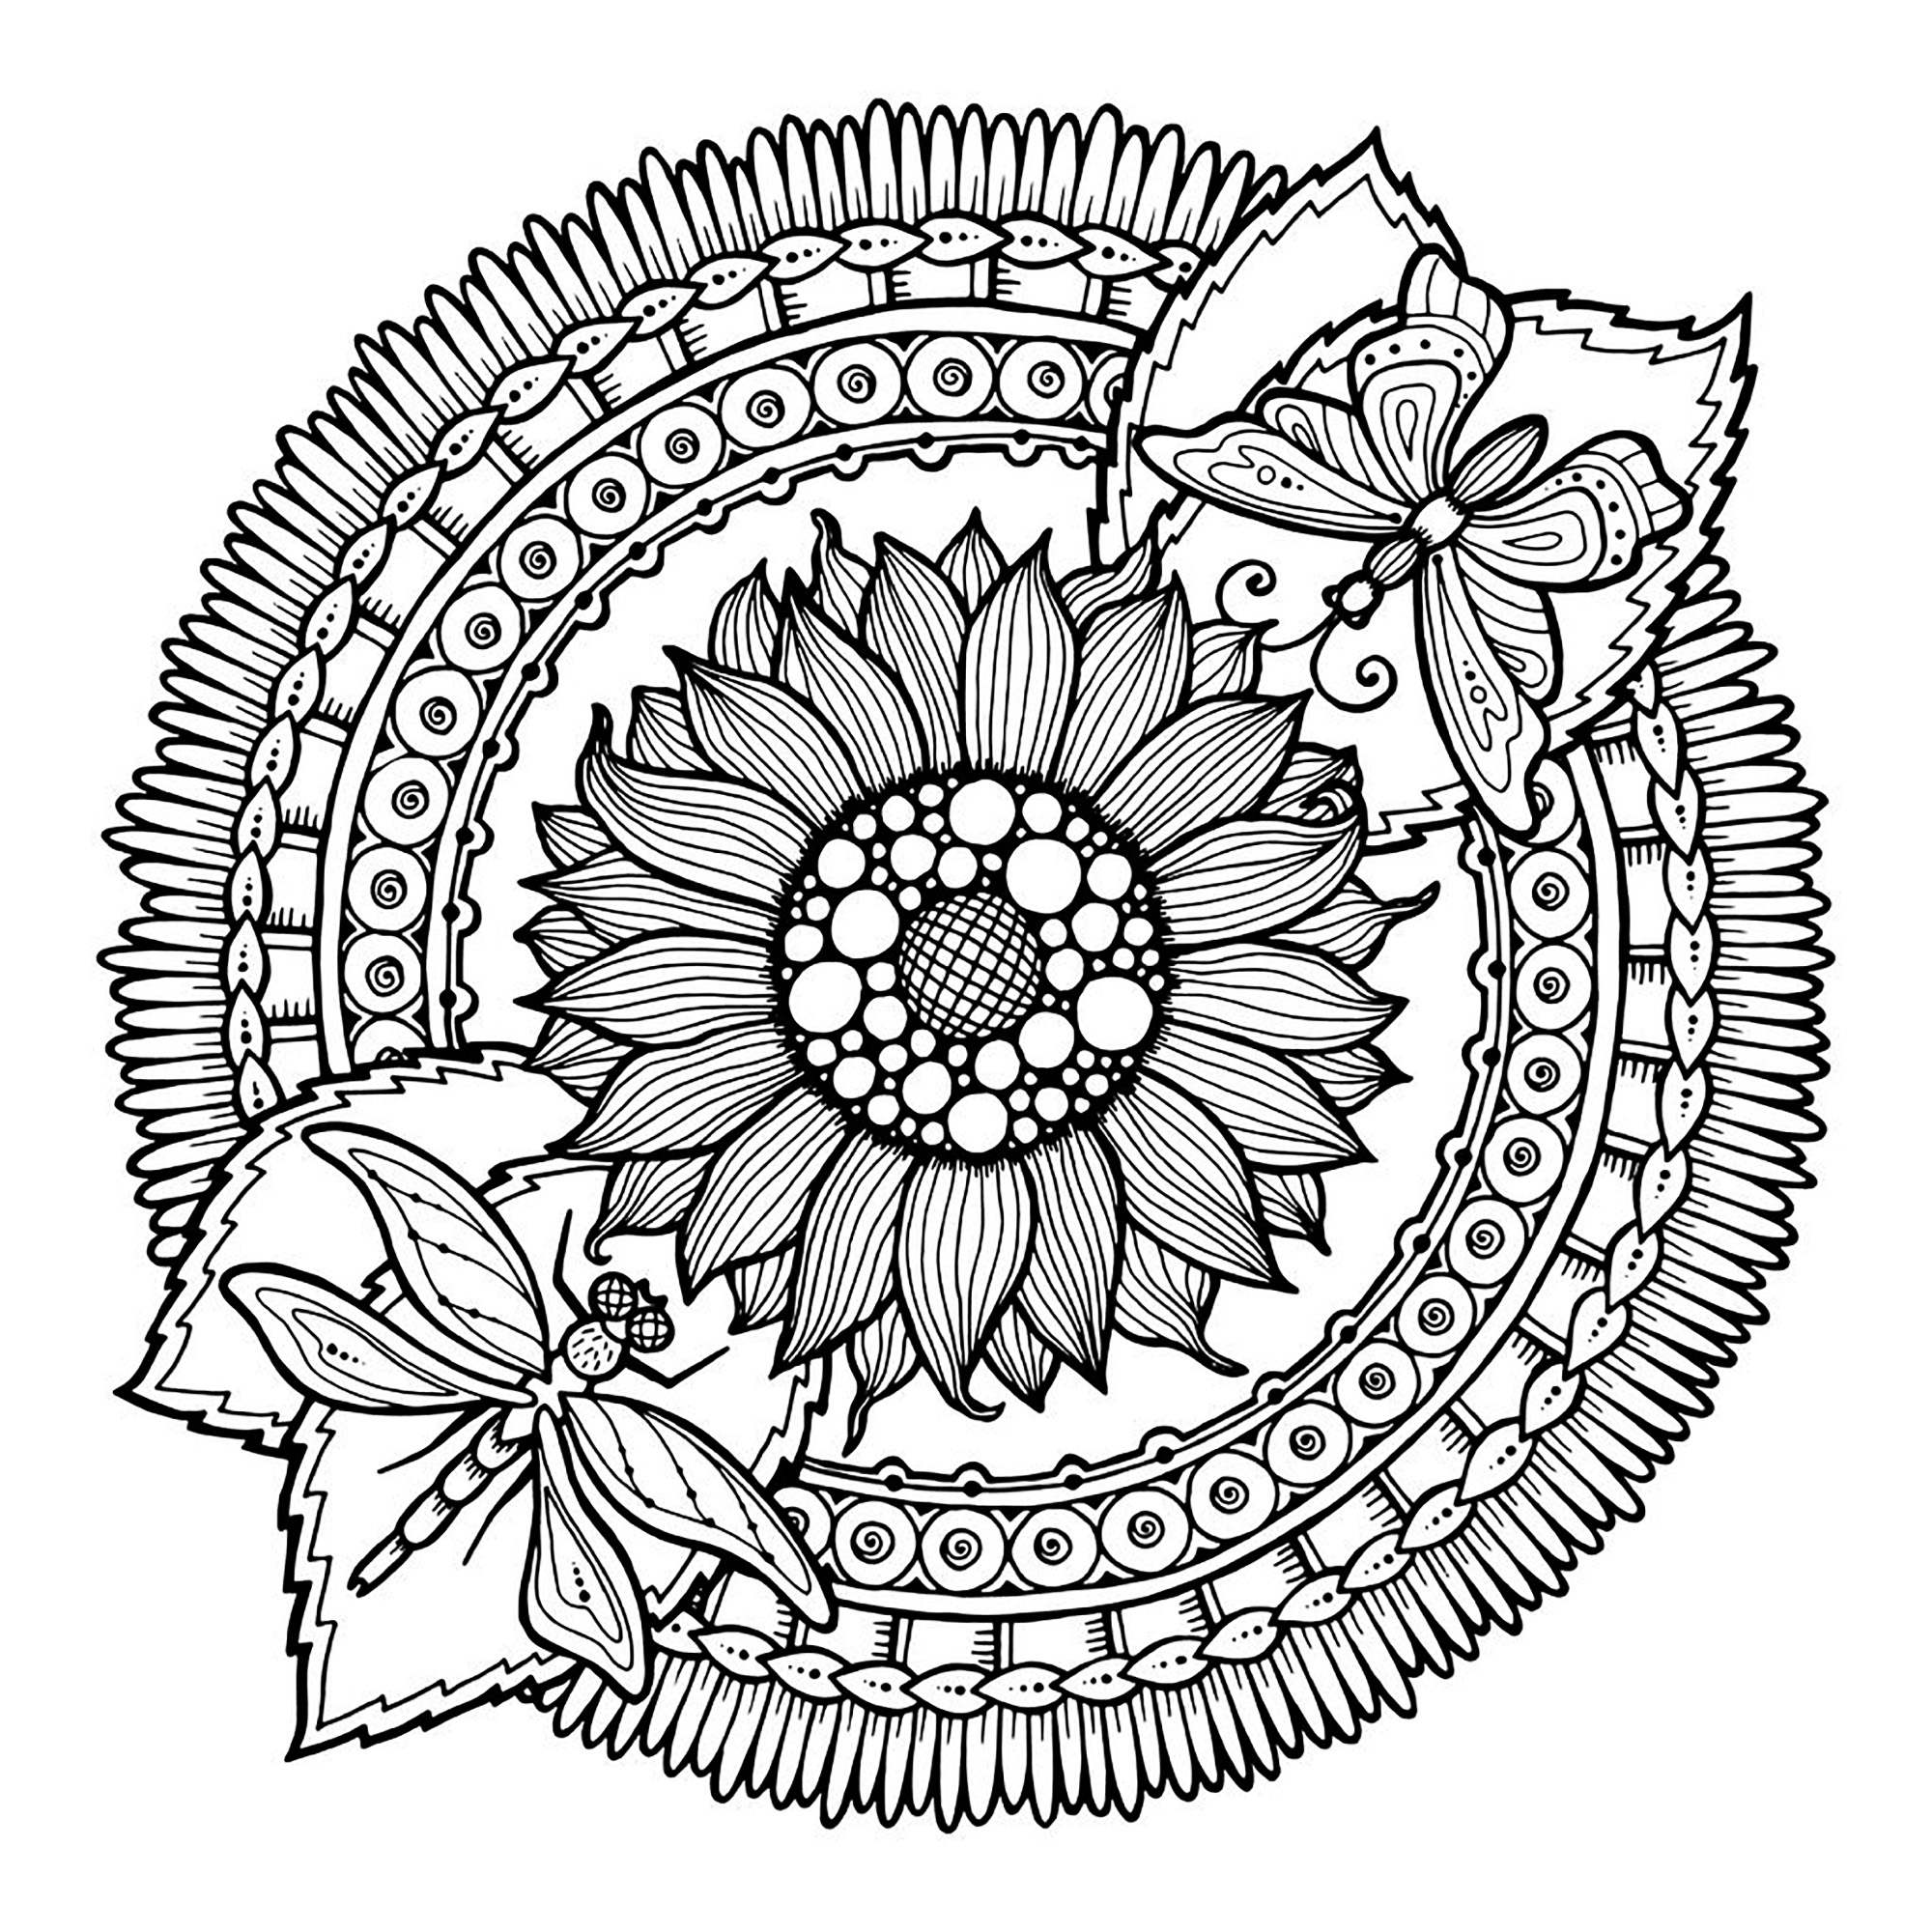 Bereiten Sie Ihre Filzstifte und Bleistifte vor, um die Farbgestaltung dieses Mandalas 'Sonnenblumen und Schmetterlinge' voller kleiner Details und ineinandergreifender Bereiche zu realisieren.